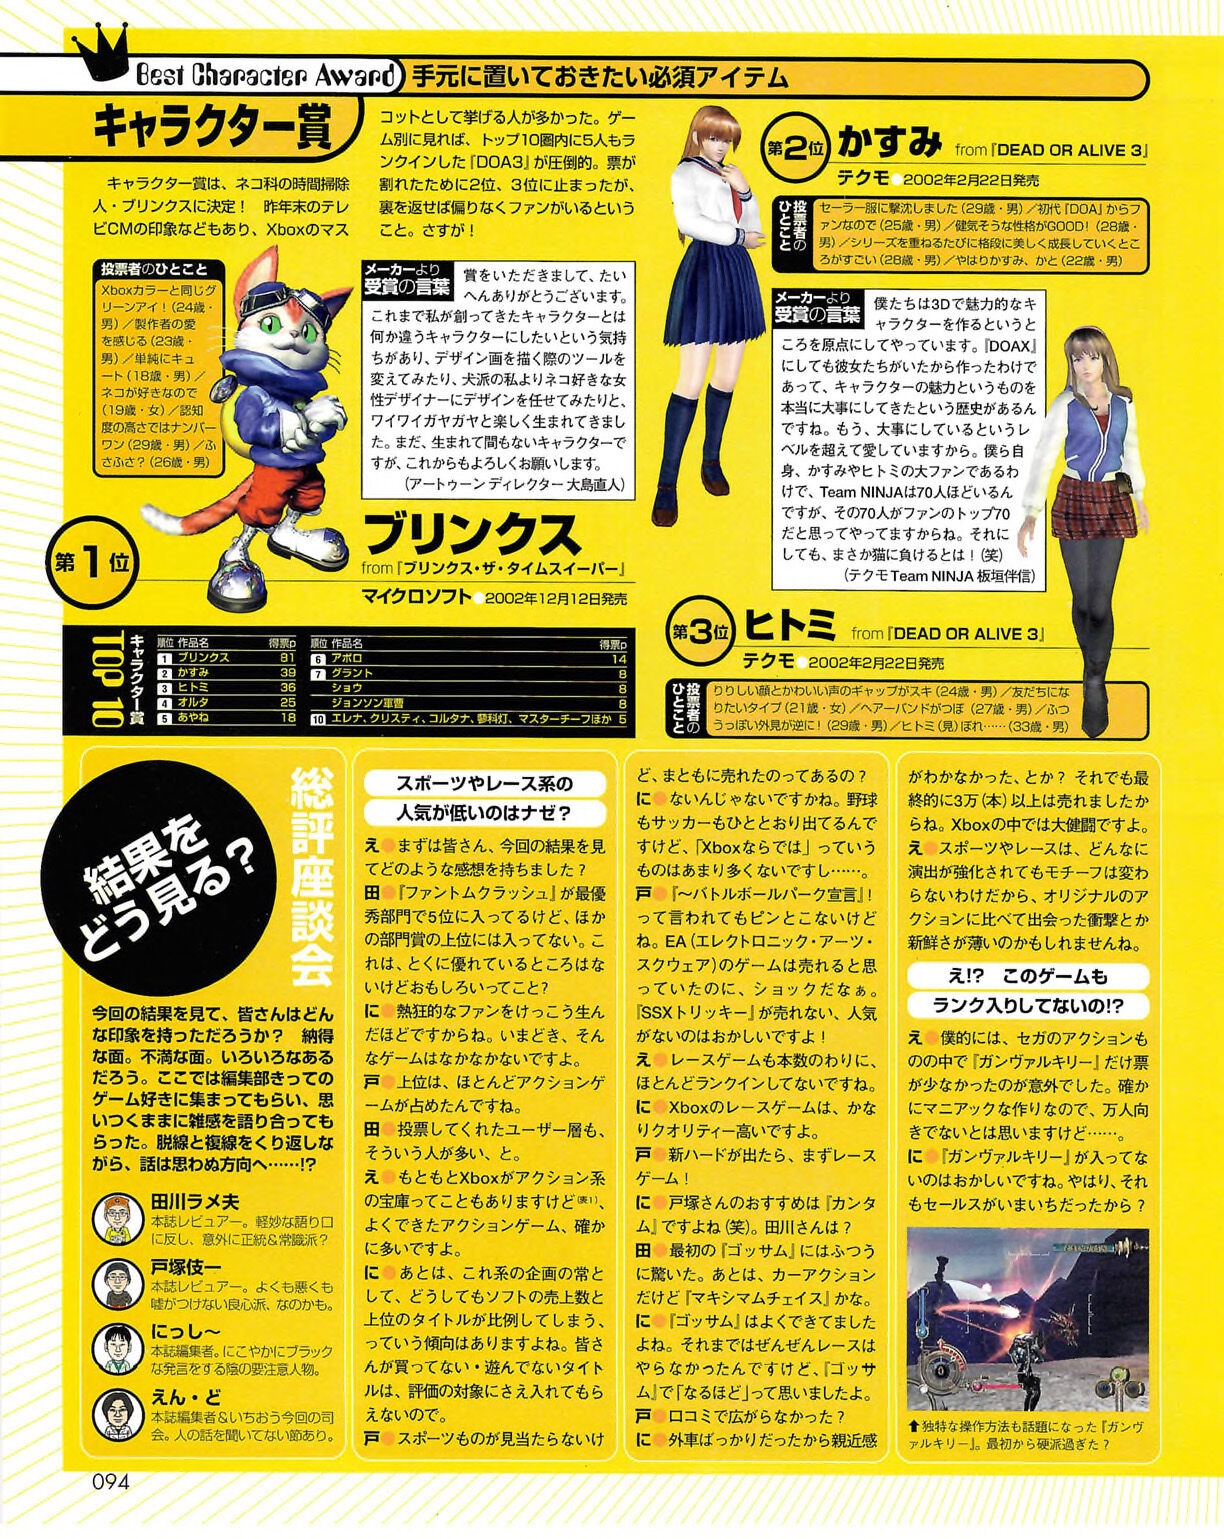 Famitsu_Xbox_2003-04_jp2 93